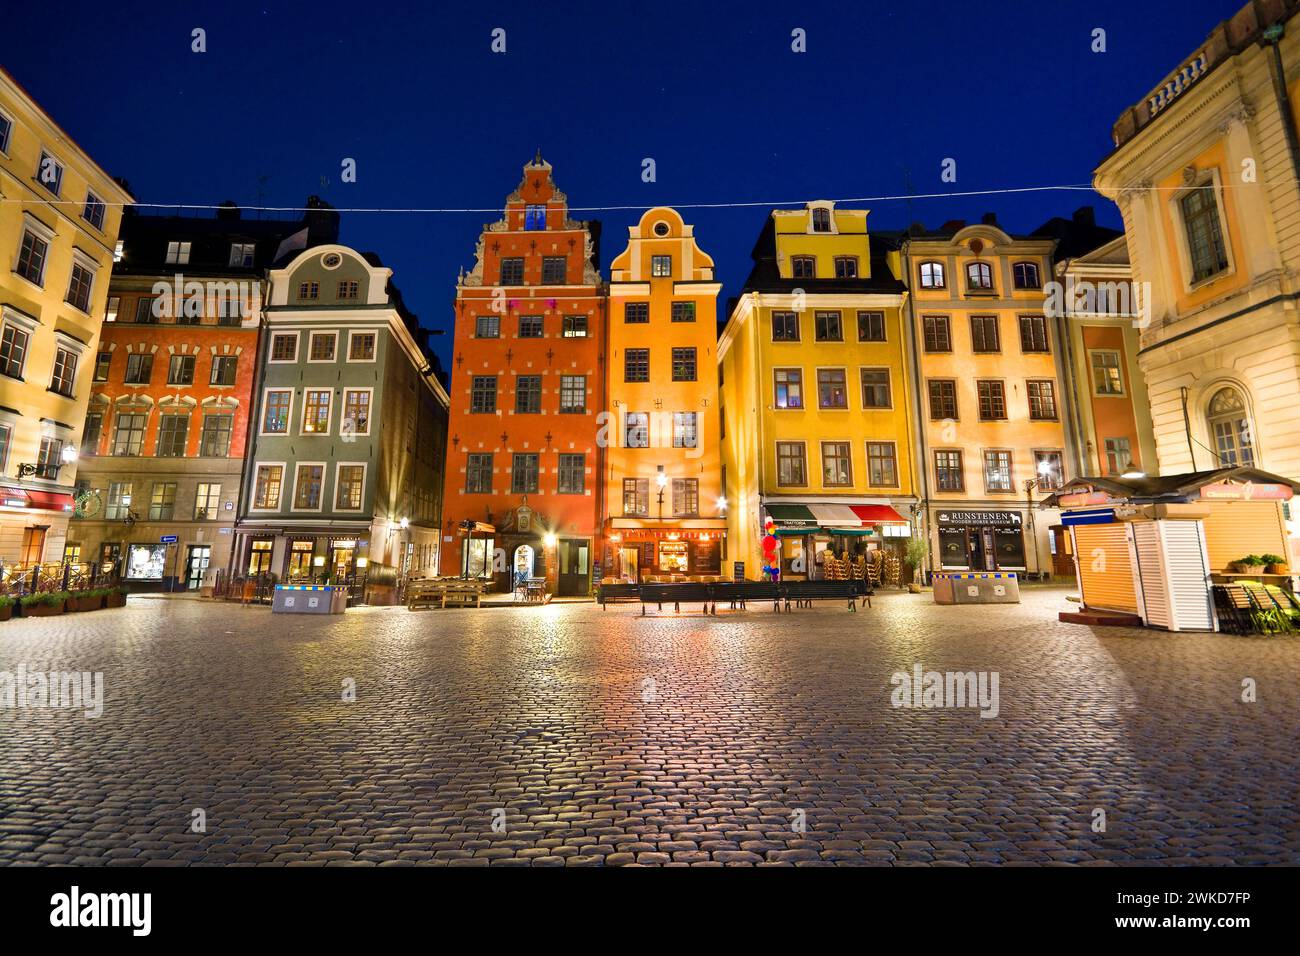 Stortorget - la piazza principale e la più antica della città vecchia di Stoccolma, la Svezia Foto Stock